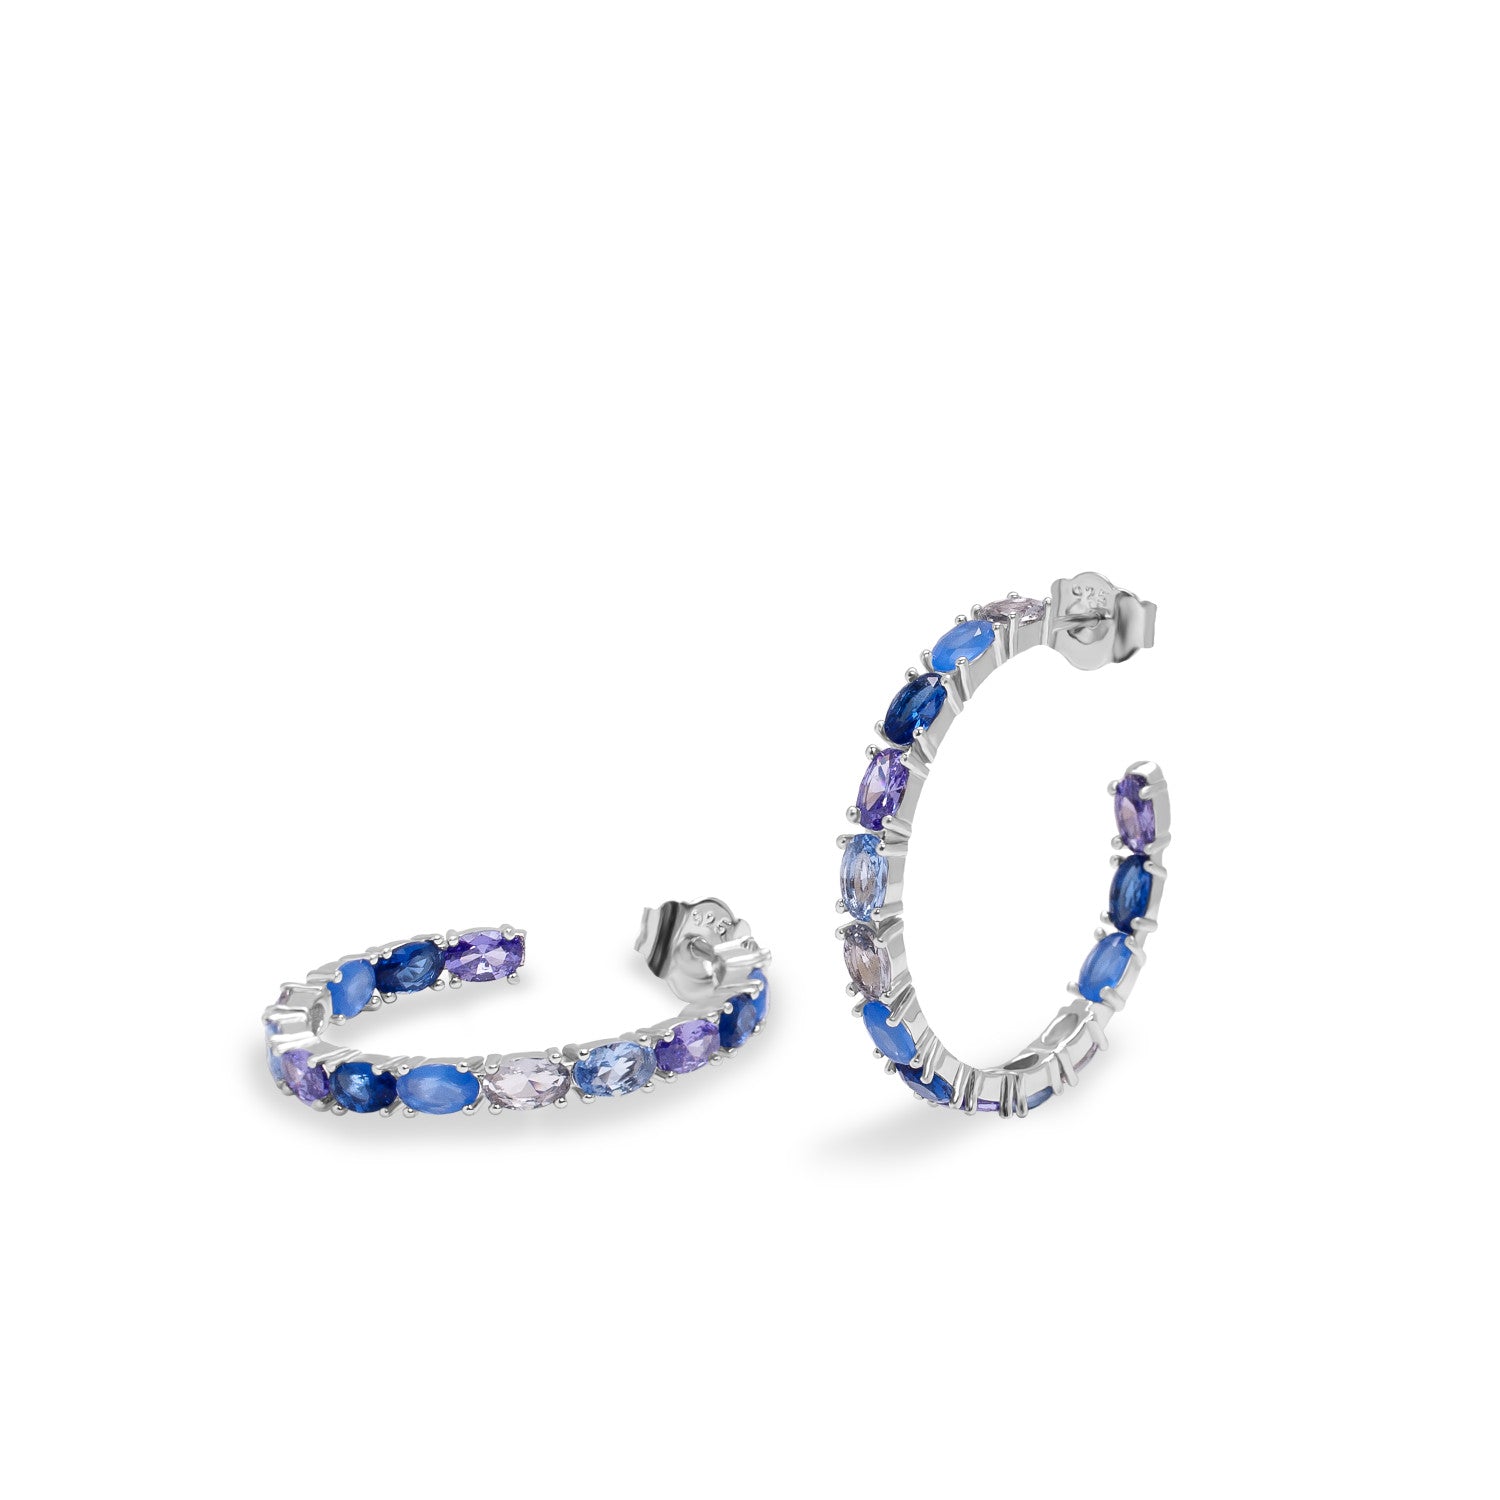 Hoop earrings with oval cut stones in blue tones